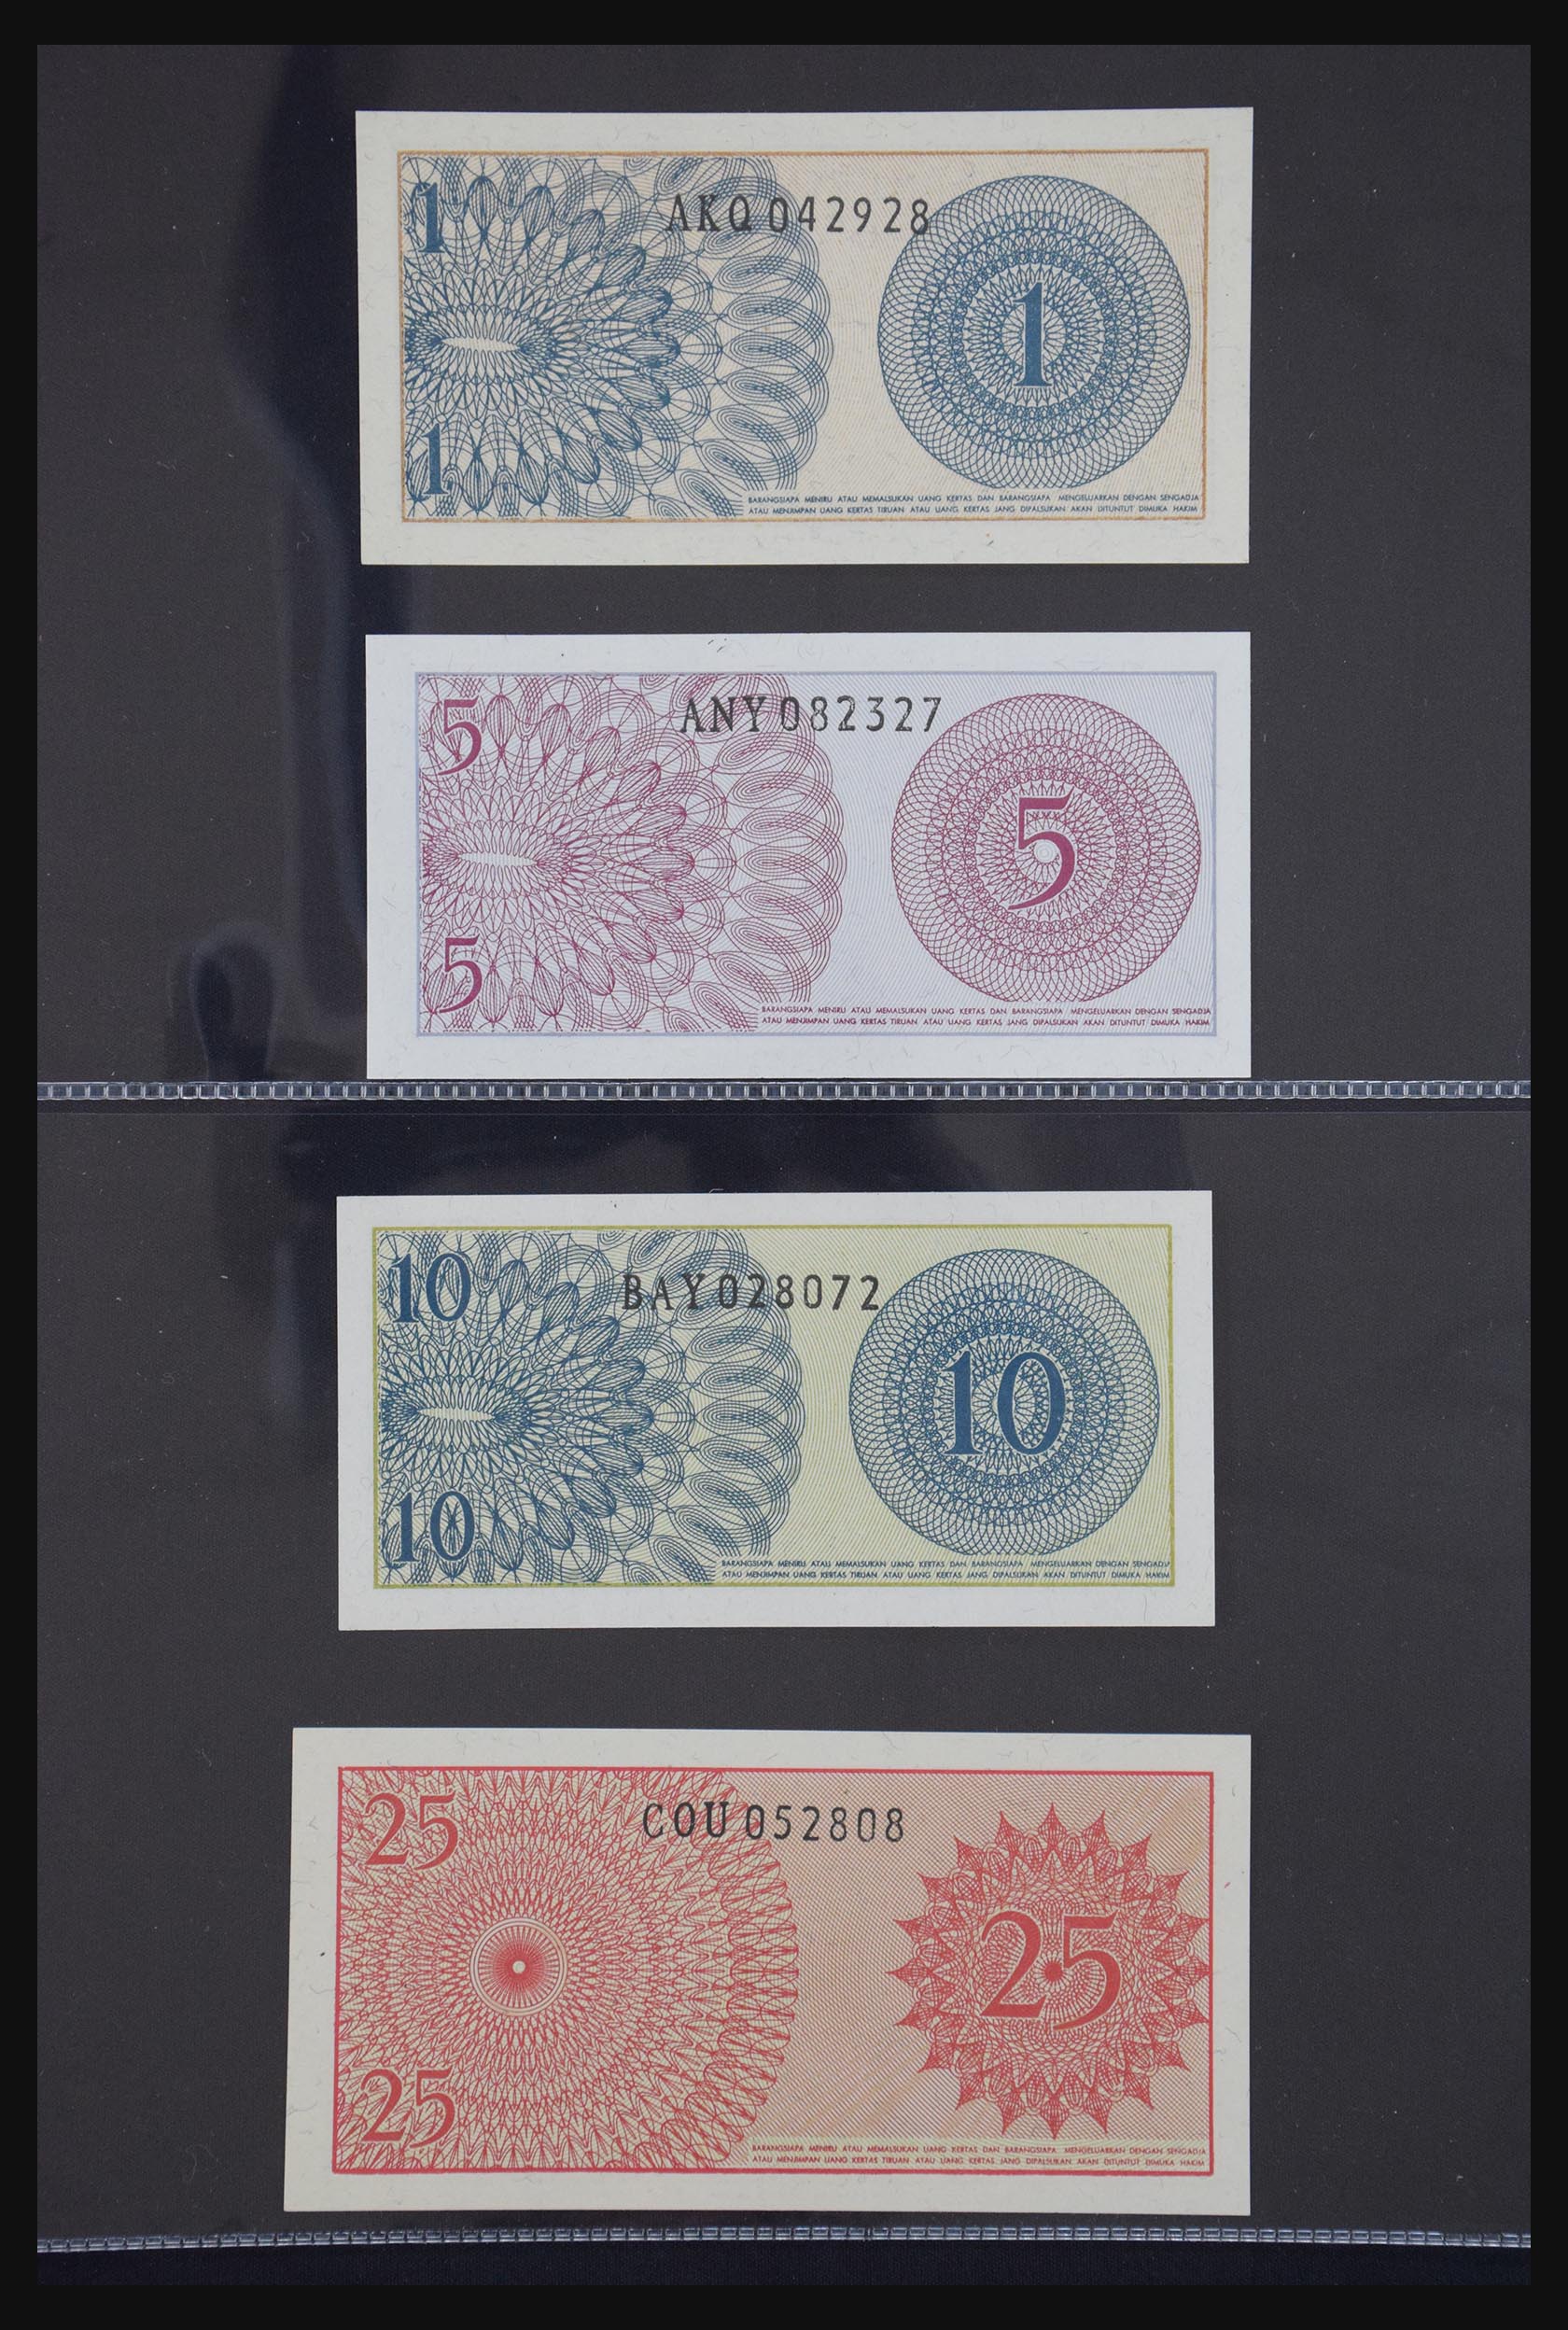 29404 078 - 29404 Netherlands banknotes 1924-1997.